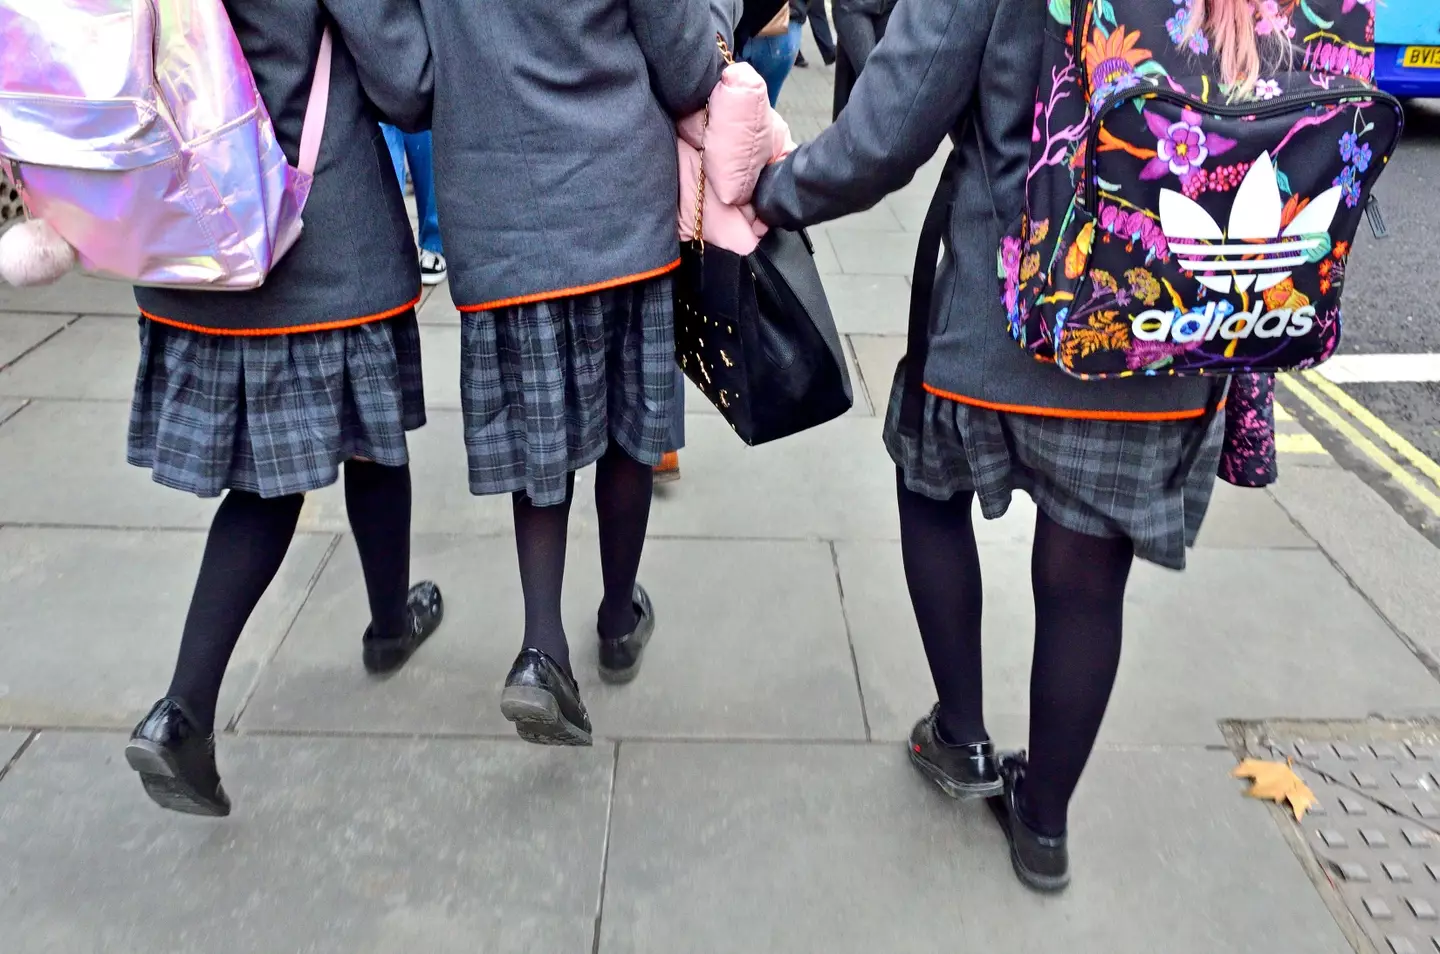 Girls in their school uniforms.